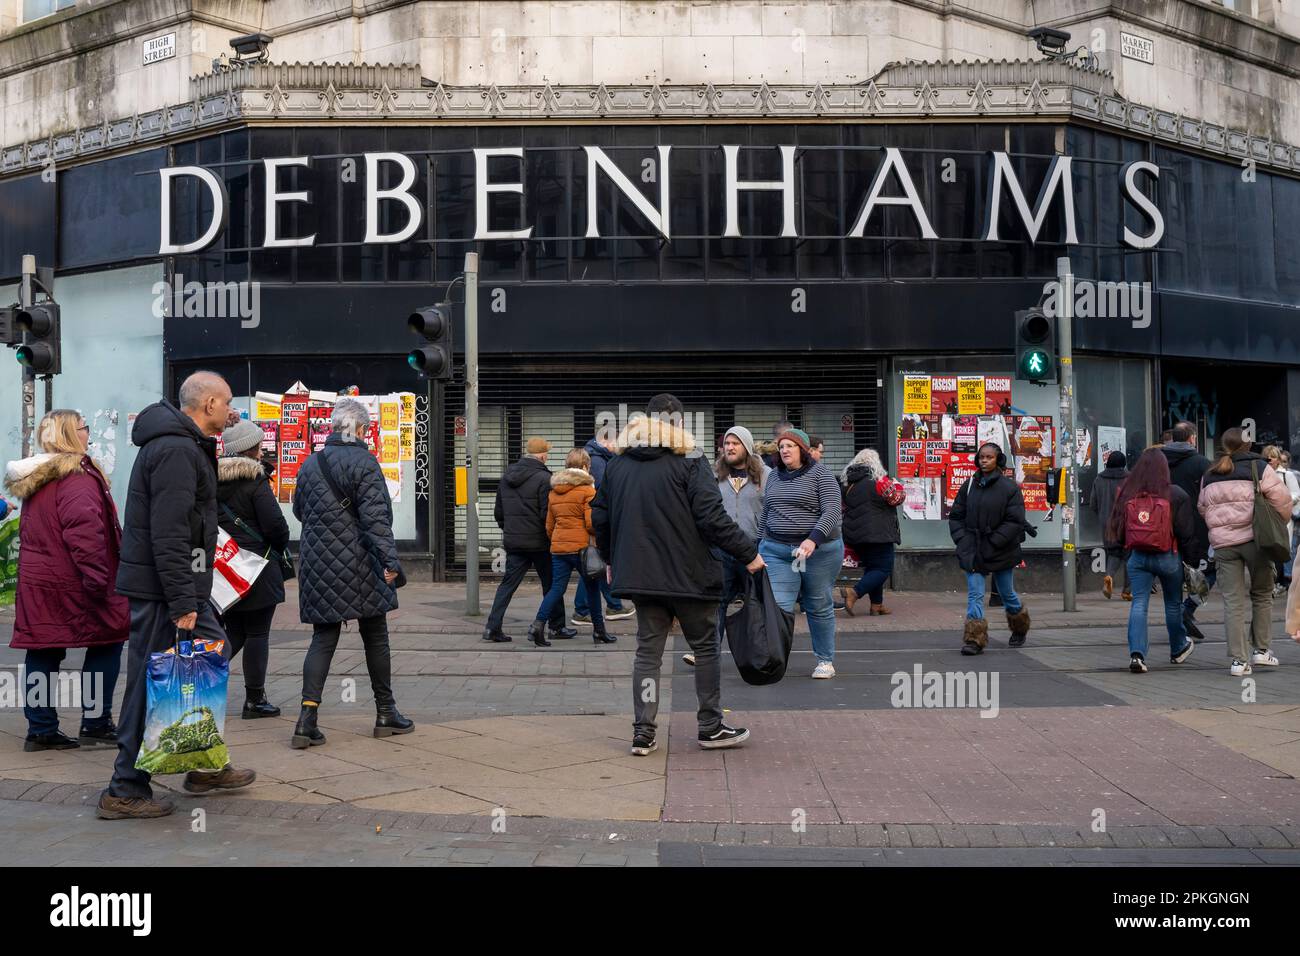 Vue générale d'un magasin Debenhams fermé à Manchester, Angleterre, Royaume-Uni. Banque D'Images